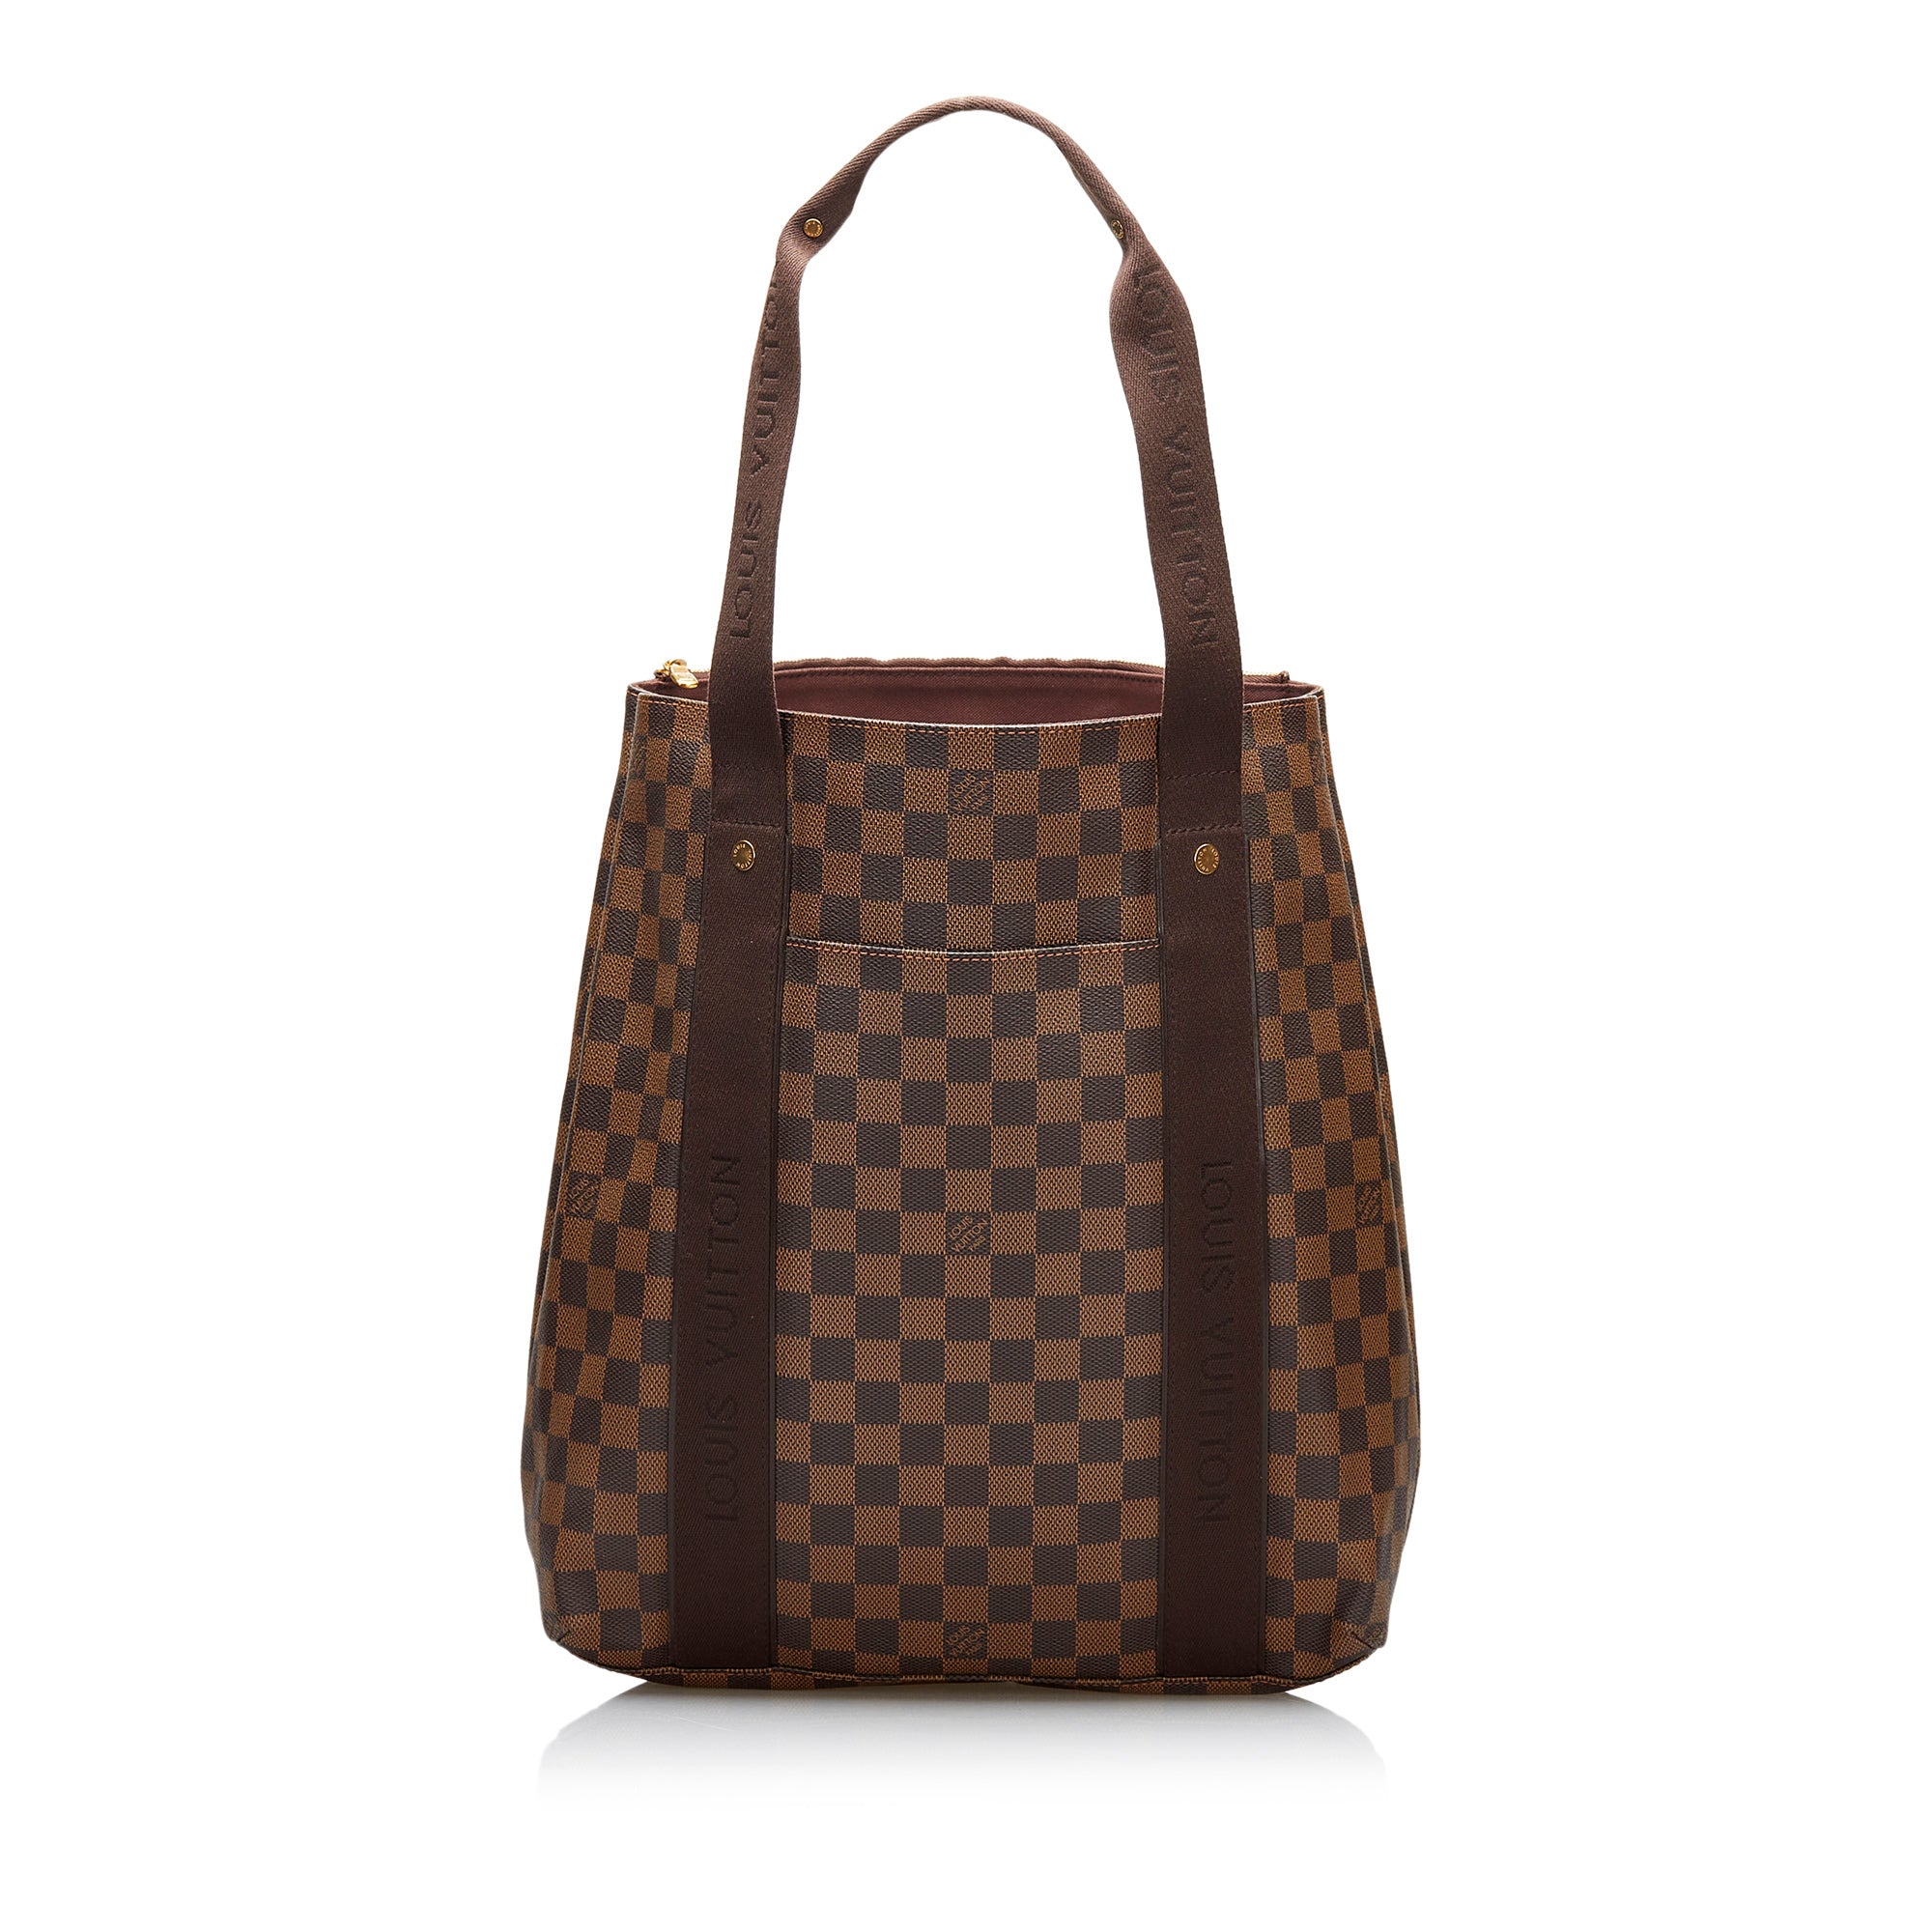 Authentic Louis Vuitton Damier Ebene Beaubourg MM Handbag/Shoulder